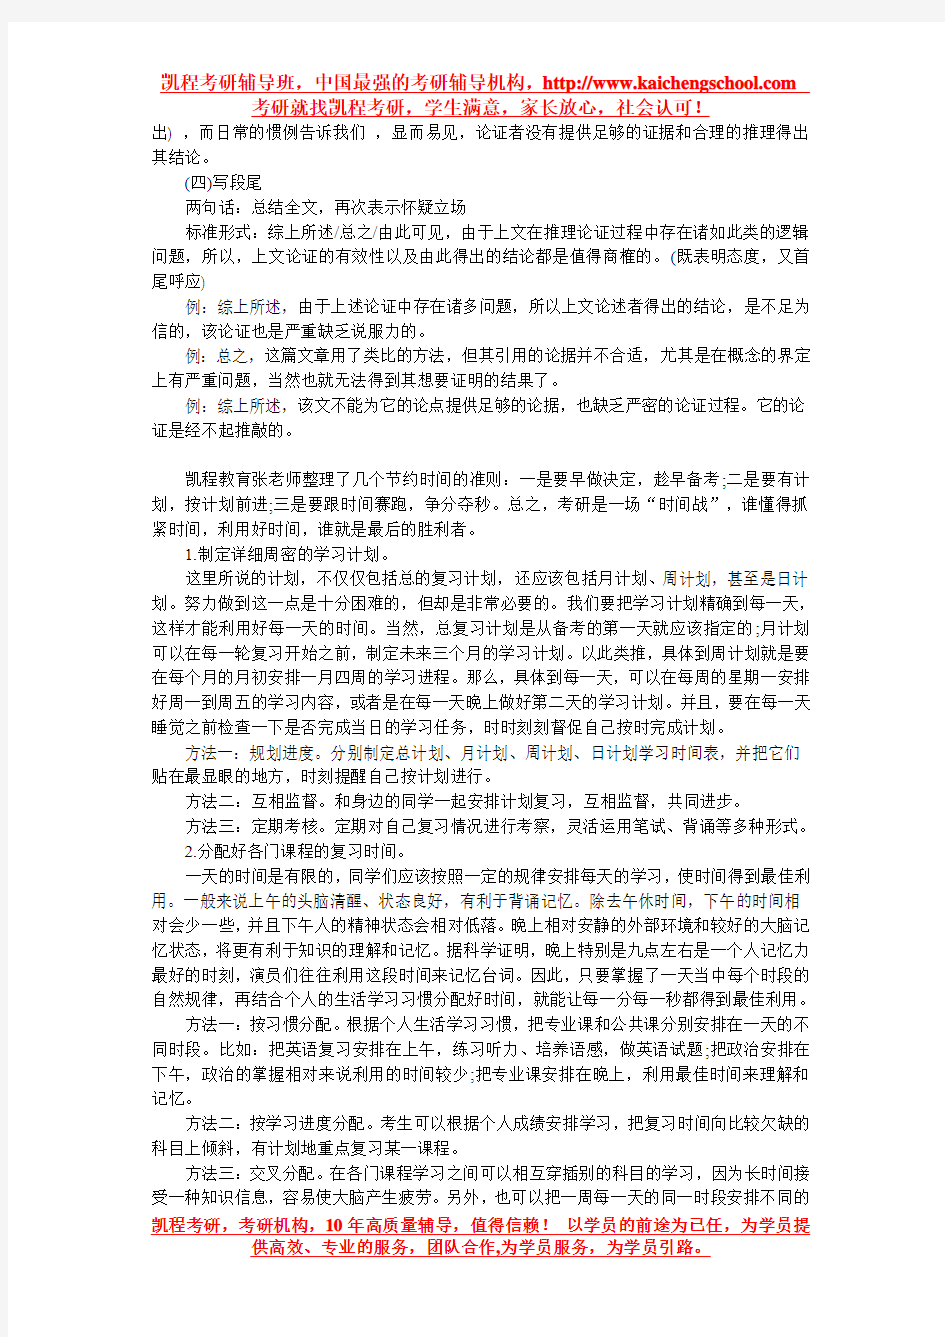 考研经管联考中文写作论证有效性分析写作模板